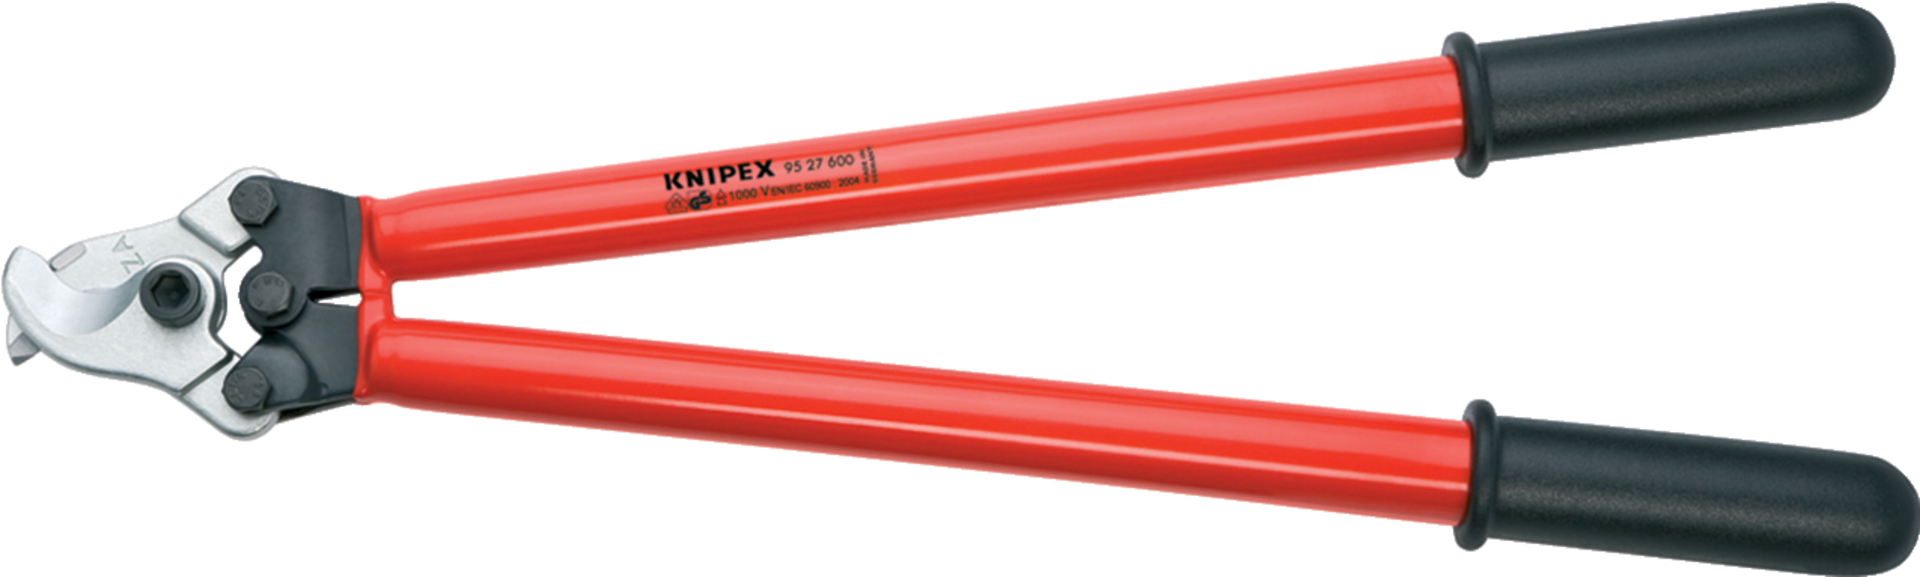 KNIPEX 95 27 600 Kabelschere f. 2-Handbedien. tauchisoliert, VDE 600 mm